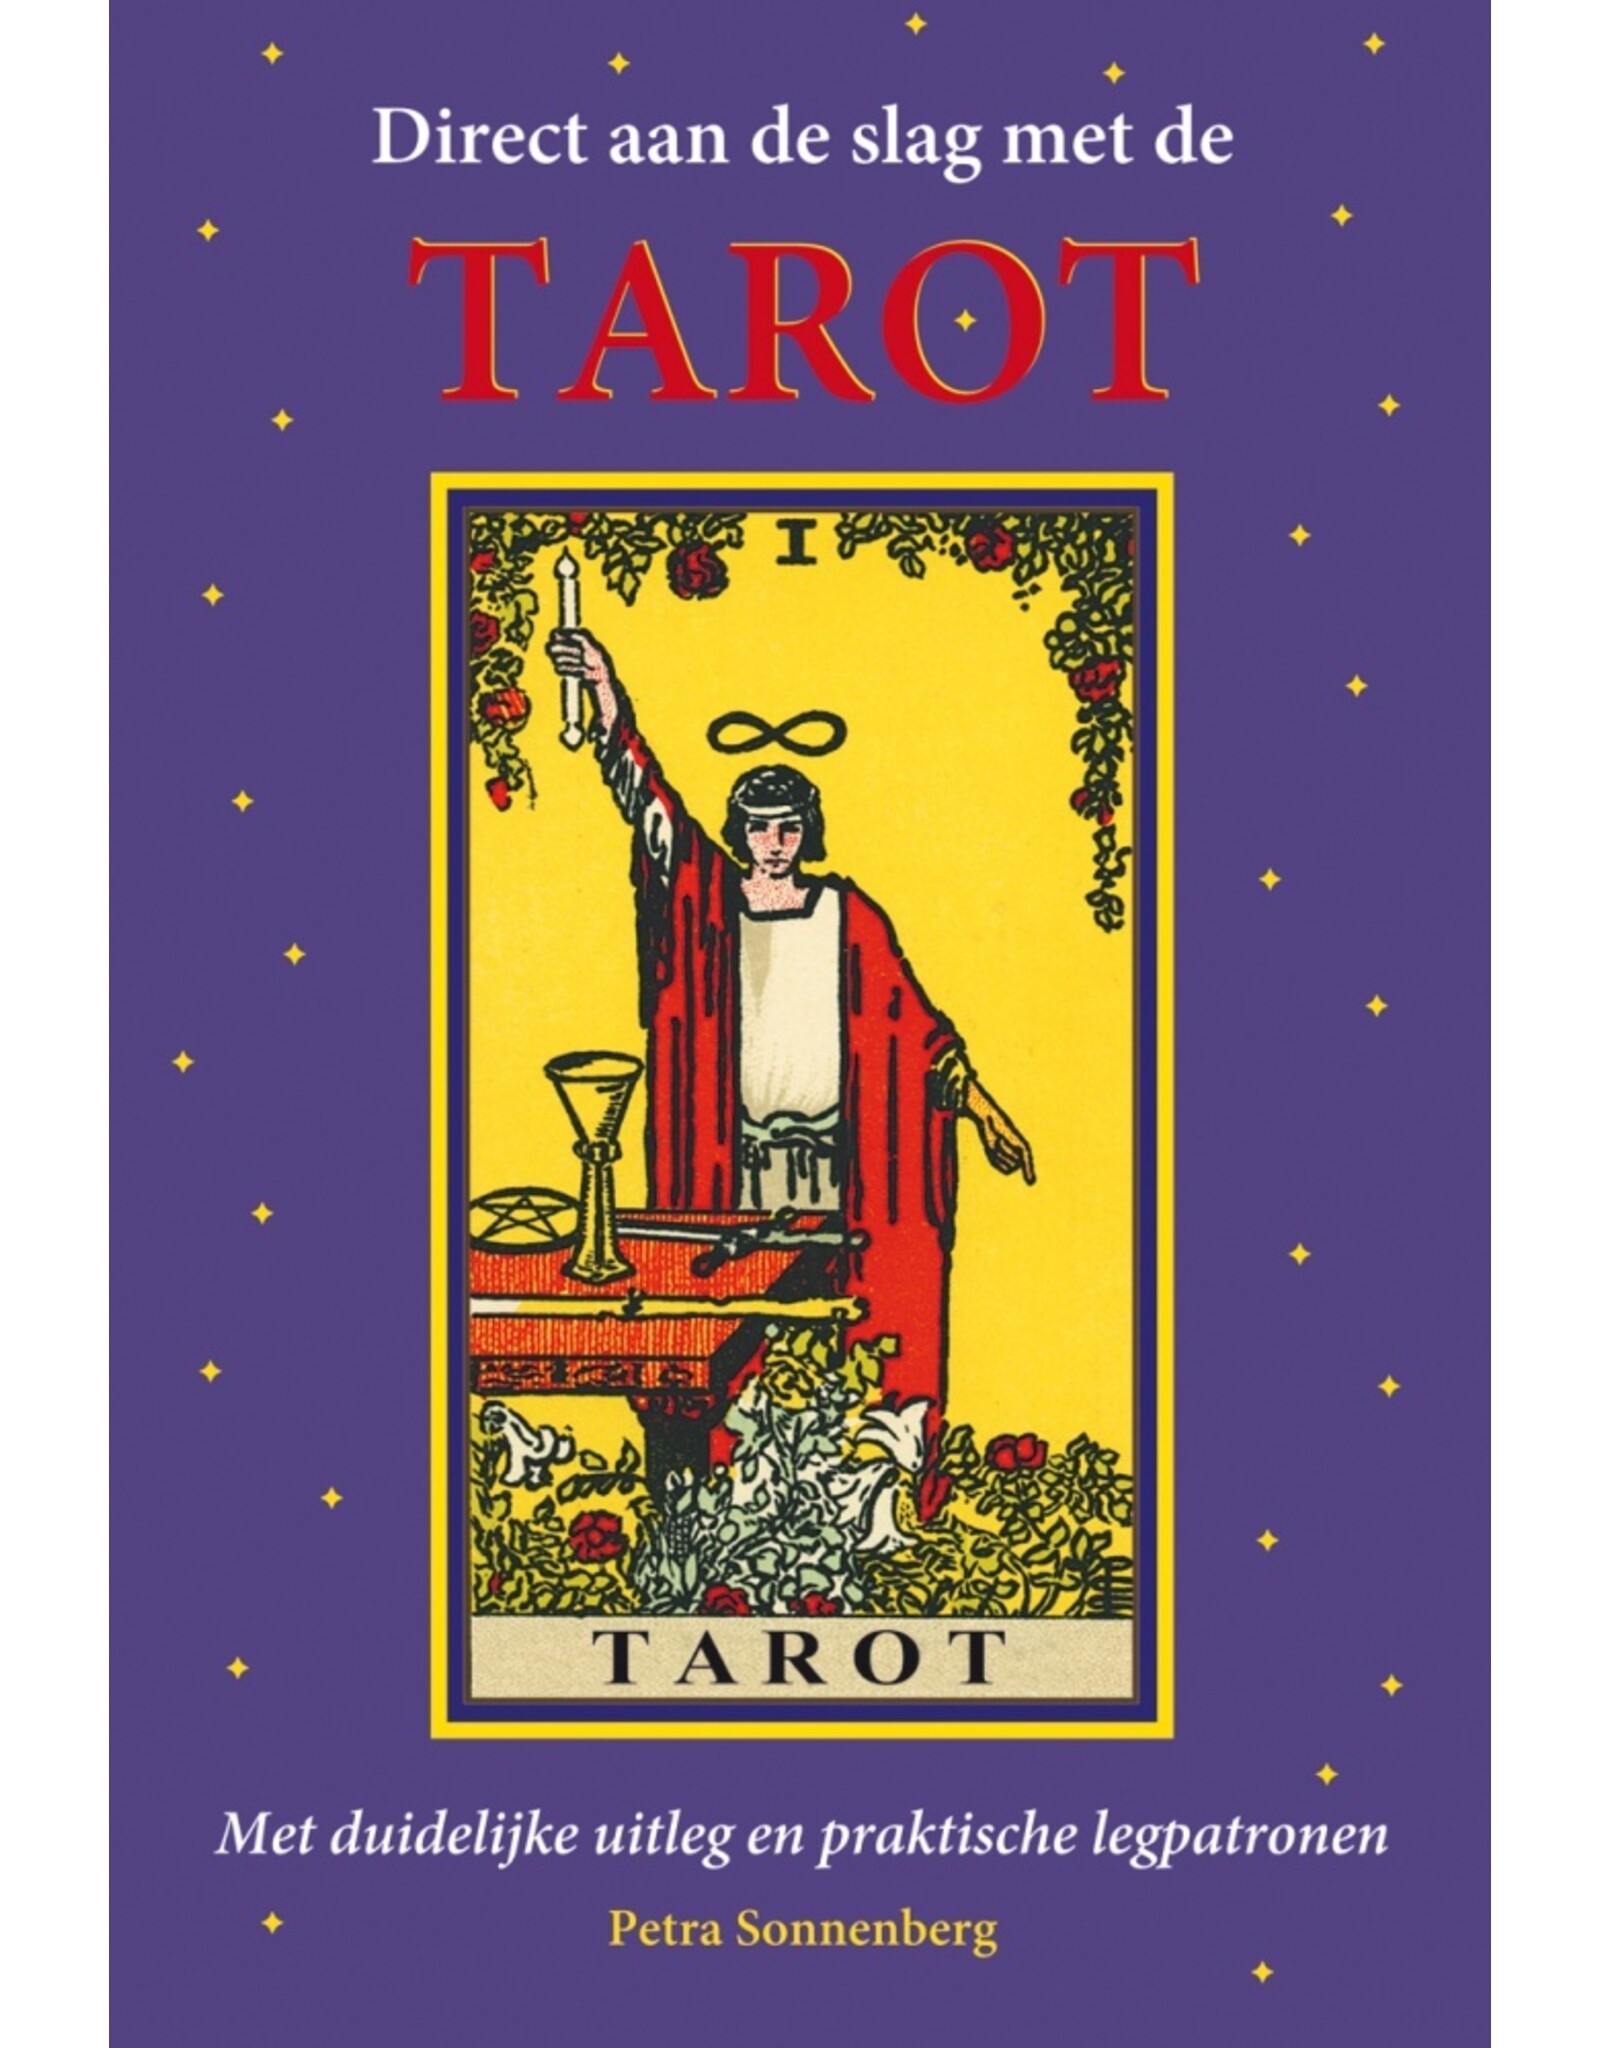 Tarot uitleg boek direct aan de slag